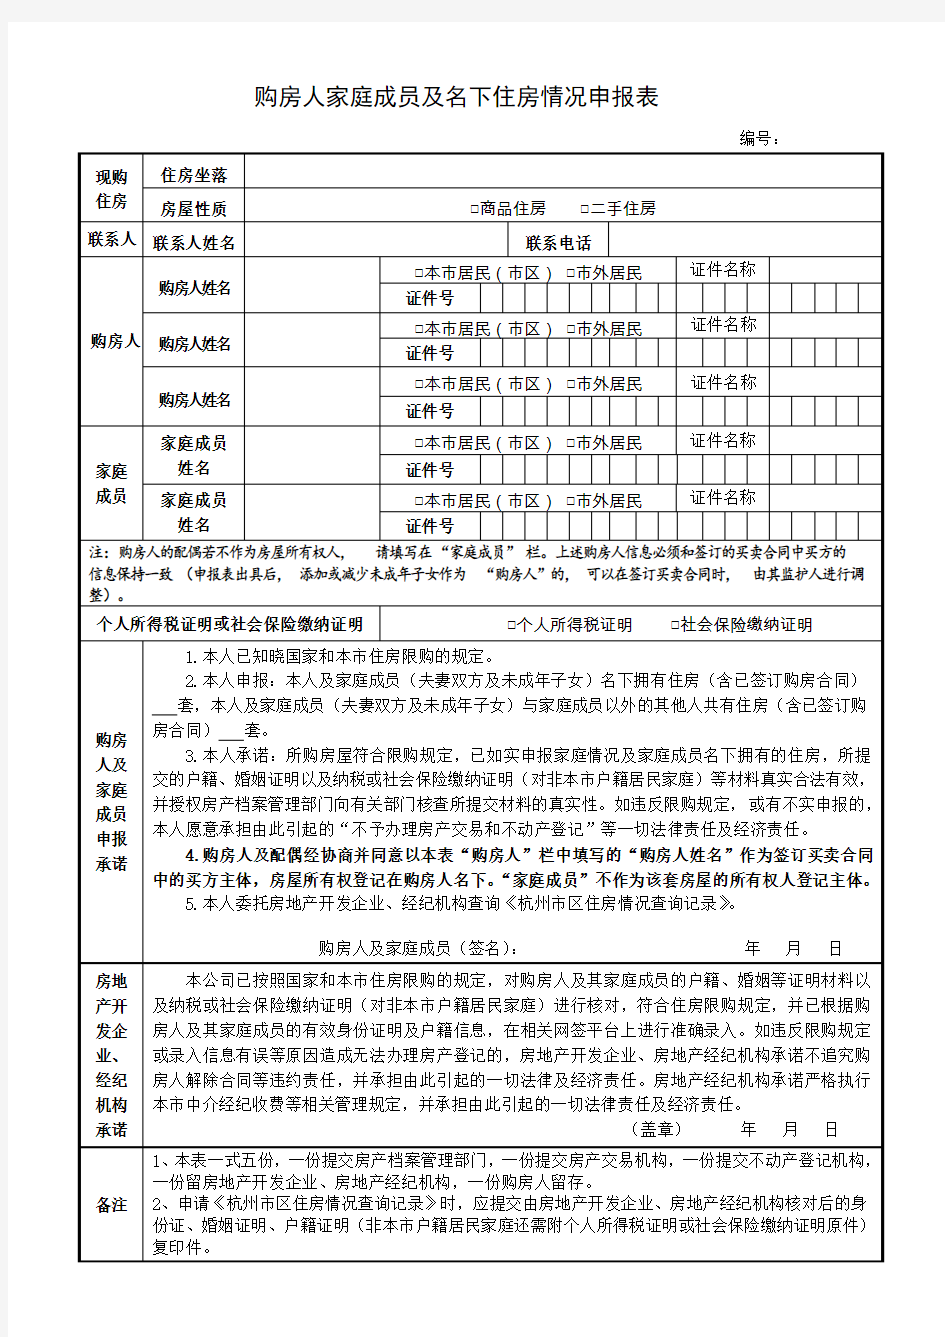 购房人家庭成员及名下住房情况申报表-空白表格(杭州)